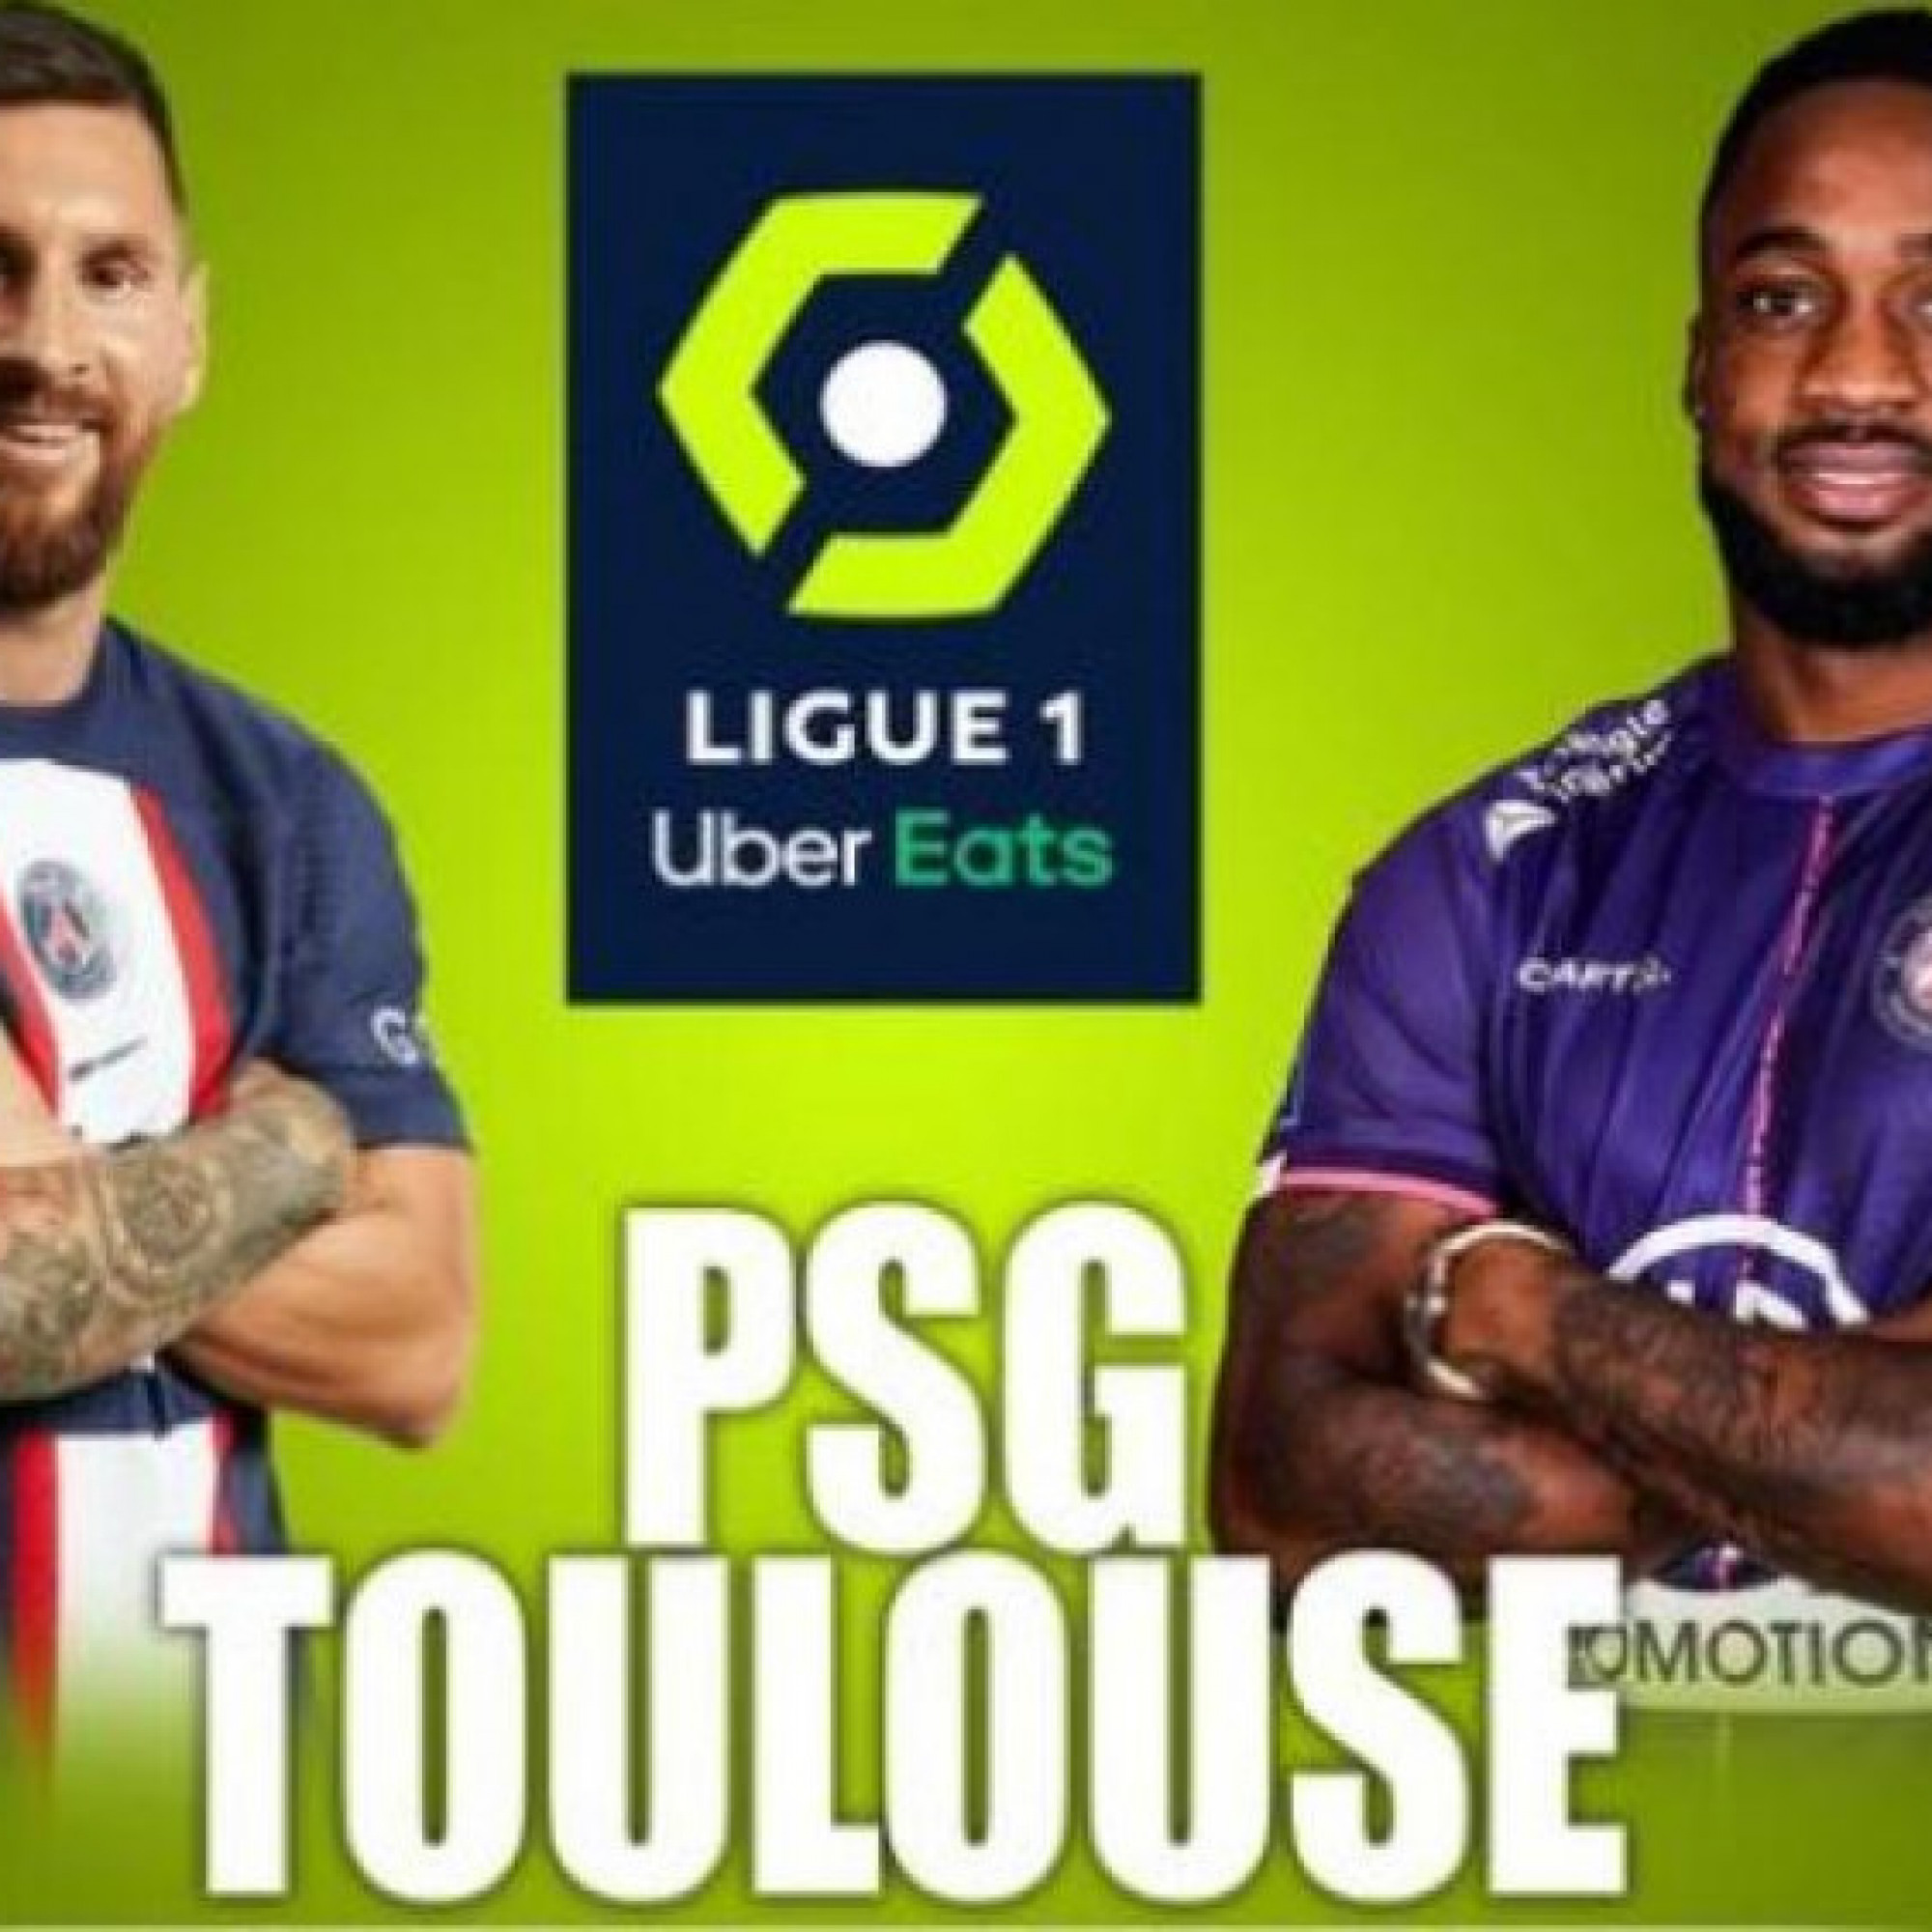  - Trực tiếp bóng đá PSG - Toulouse: Messi gánh trọng trách hàng công (Ligue 1)